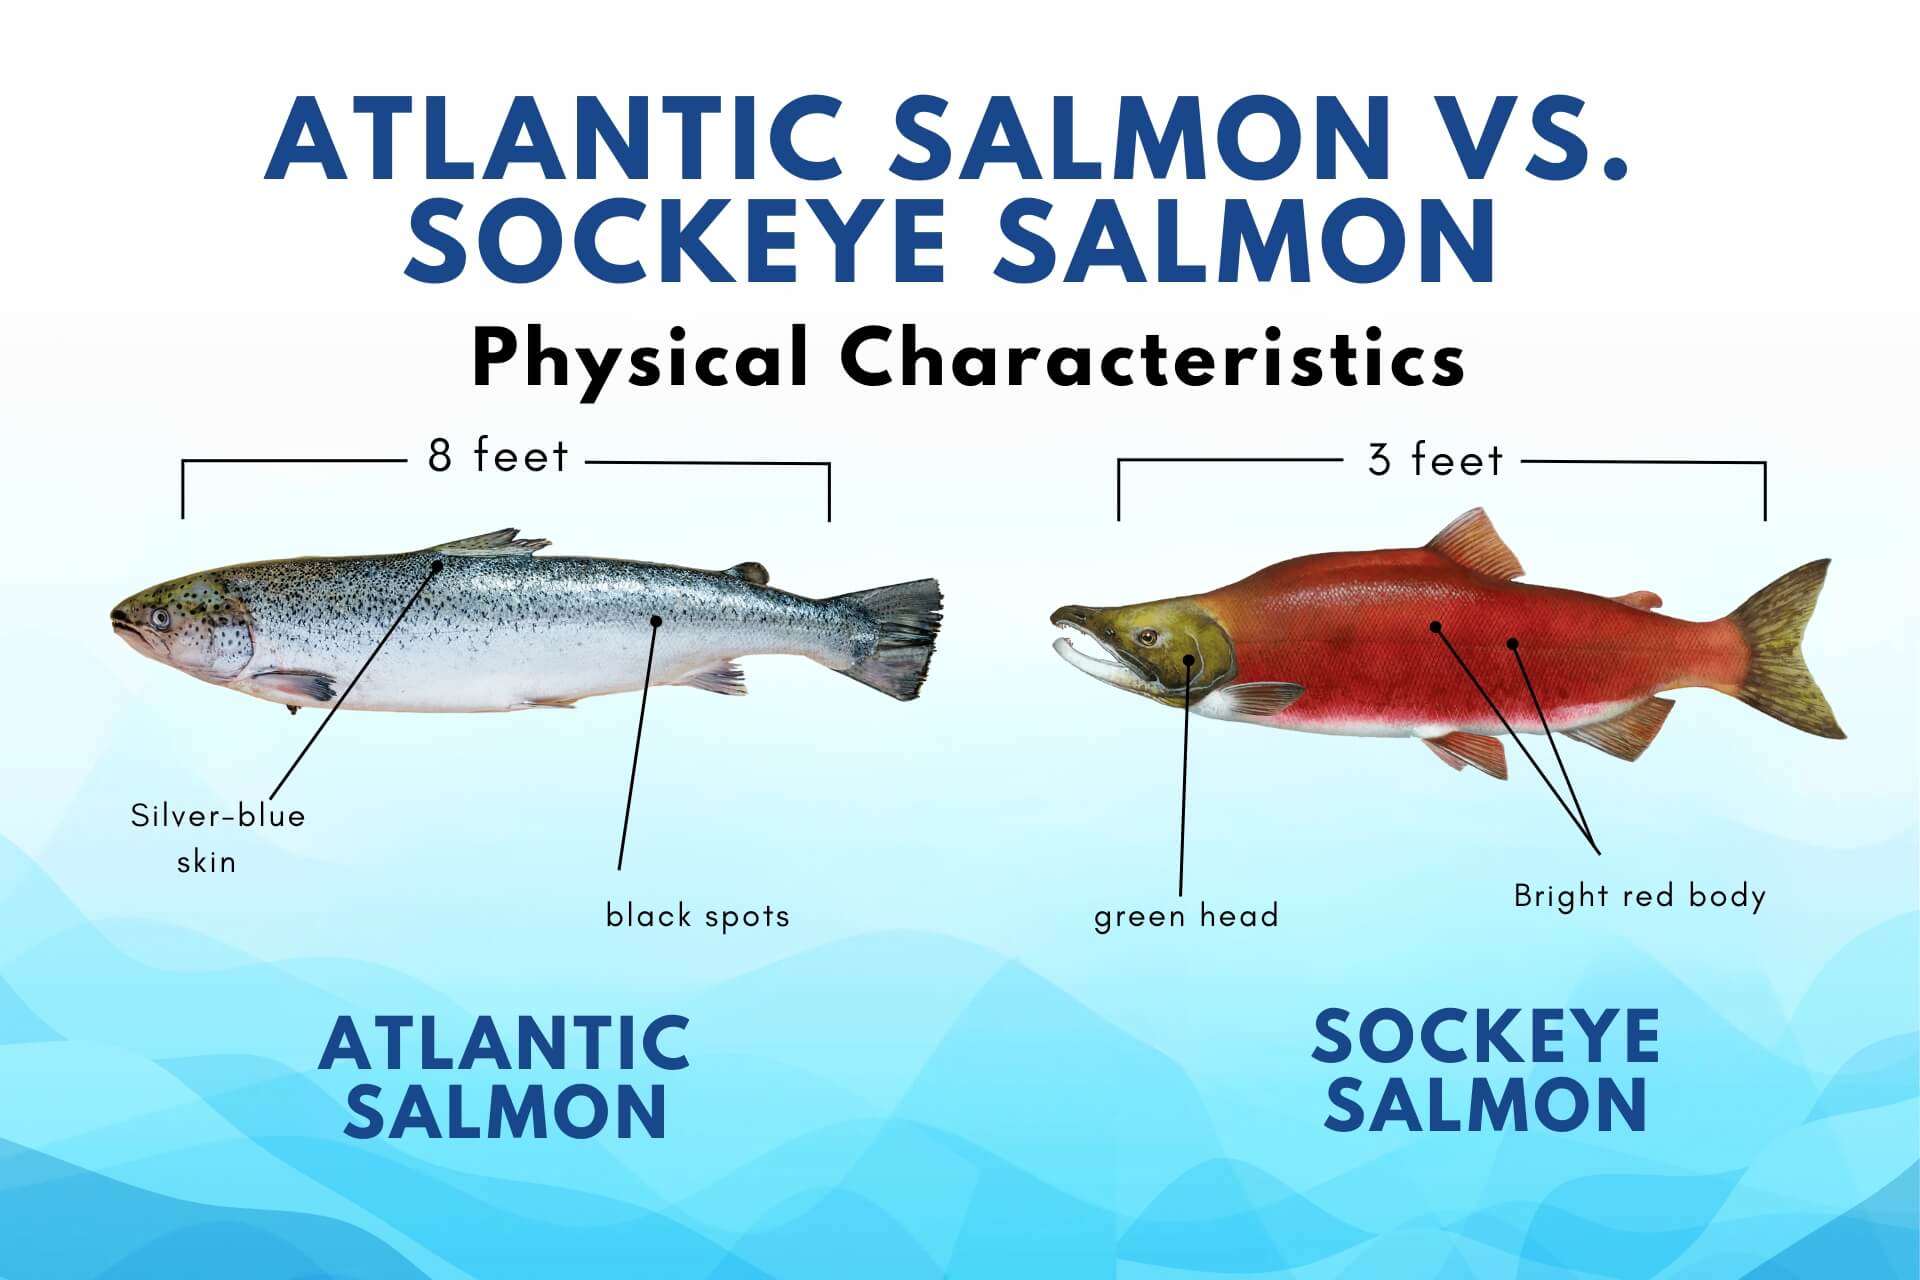 https://cdn.shopify.com/s/files/1/0562/5973/9810/files/atlantic_salmon_vs_sockeye_salmon.jpg?v=1694606713